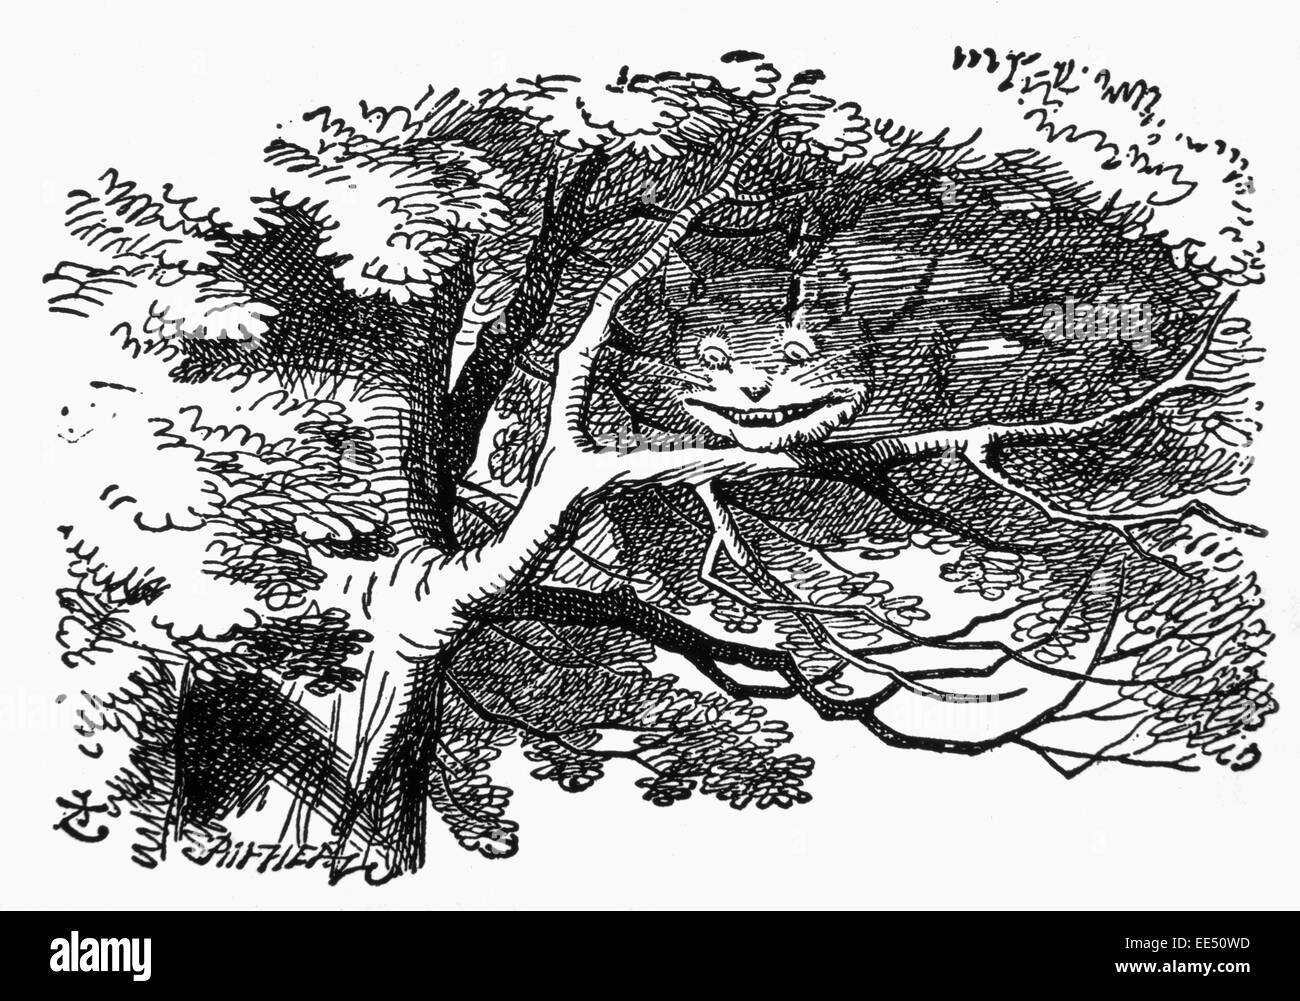 Chat de Cheshire, l'aventure d'Alice au Pays des merveilles de Lewis Carroll, Illustration, vers 1865 Banque D'Images